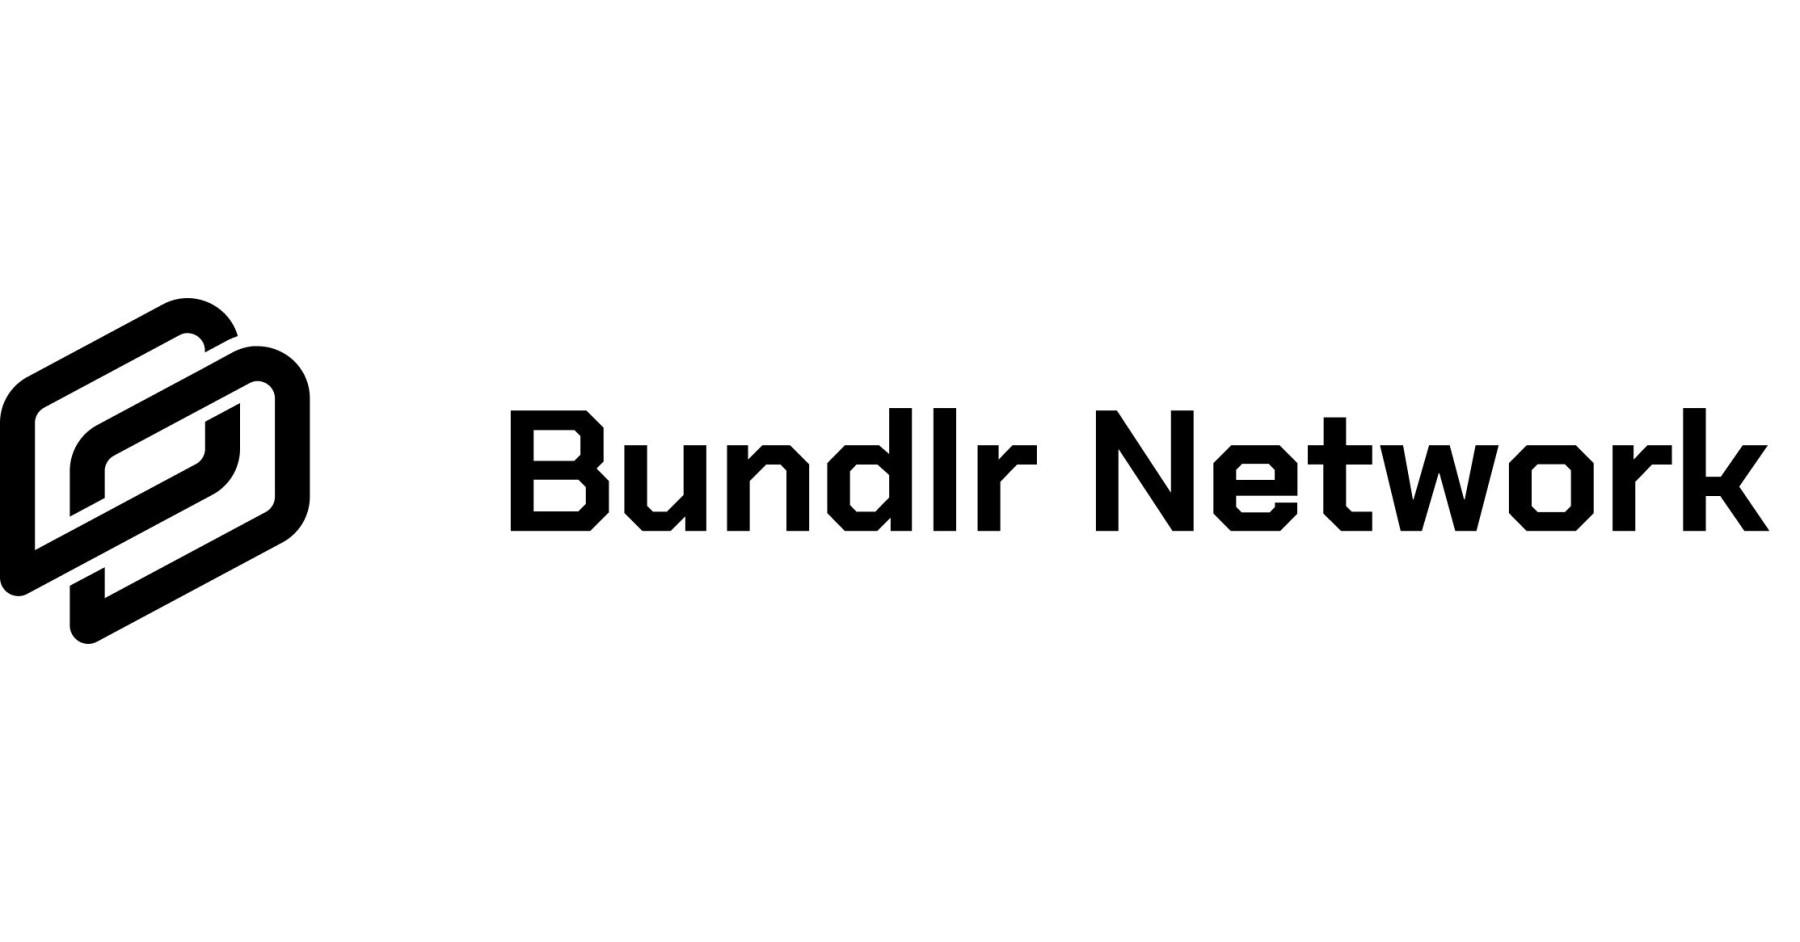 Bundlr_Network_logo.jpg